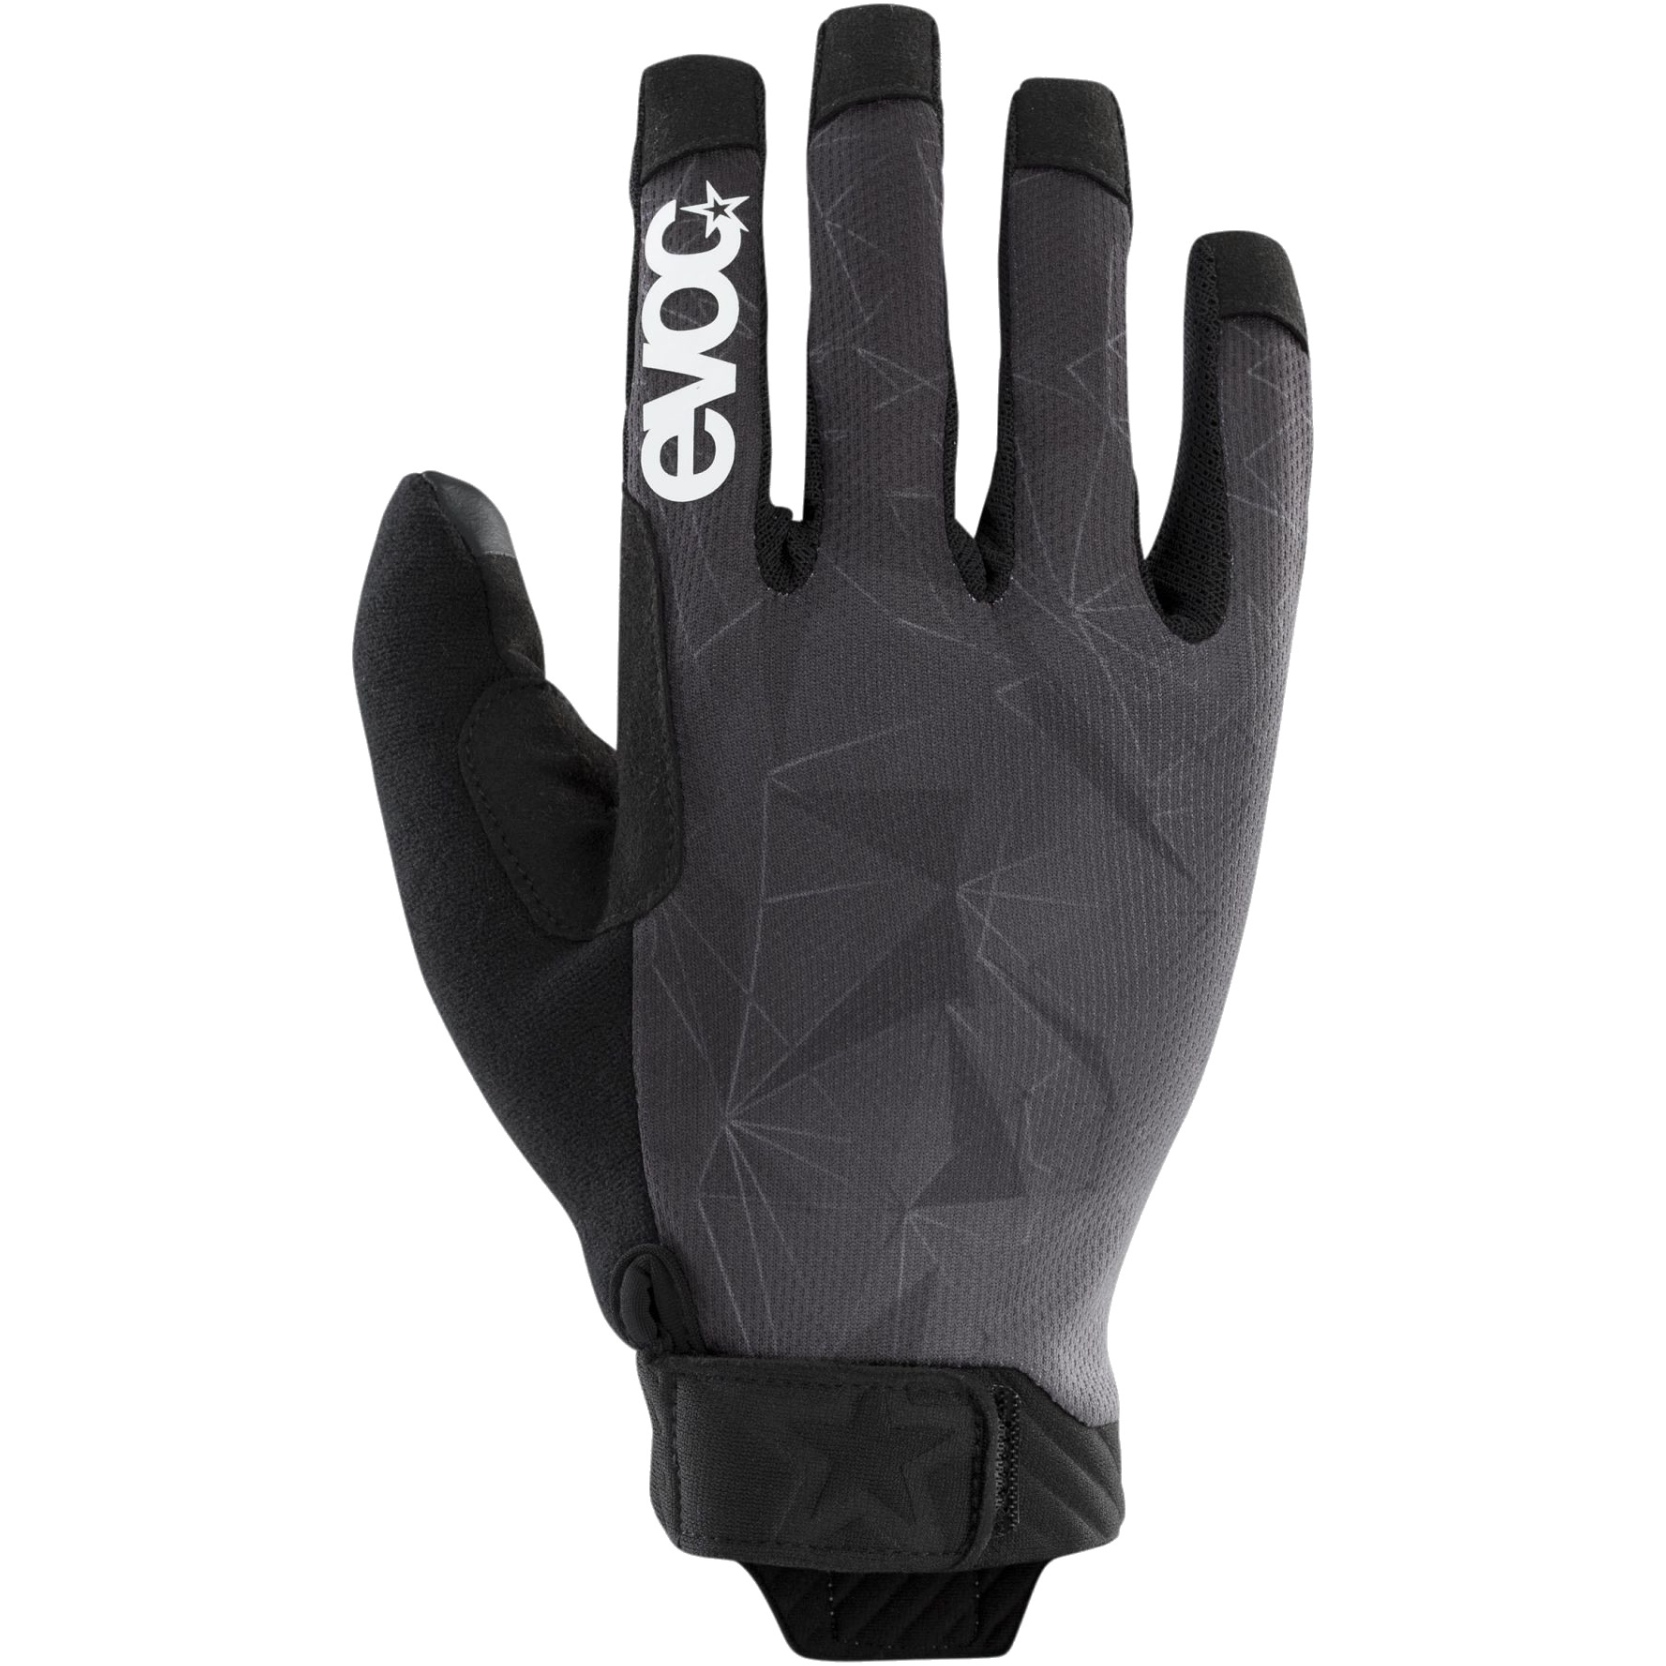 Produktbild von EVOC Enduro Touch Handschuhe - Schwarz